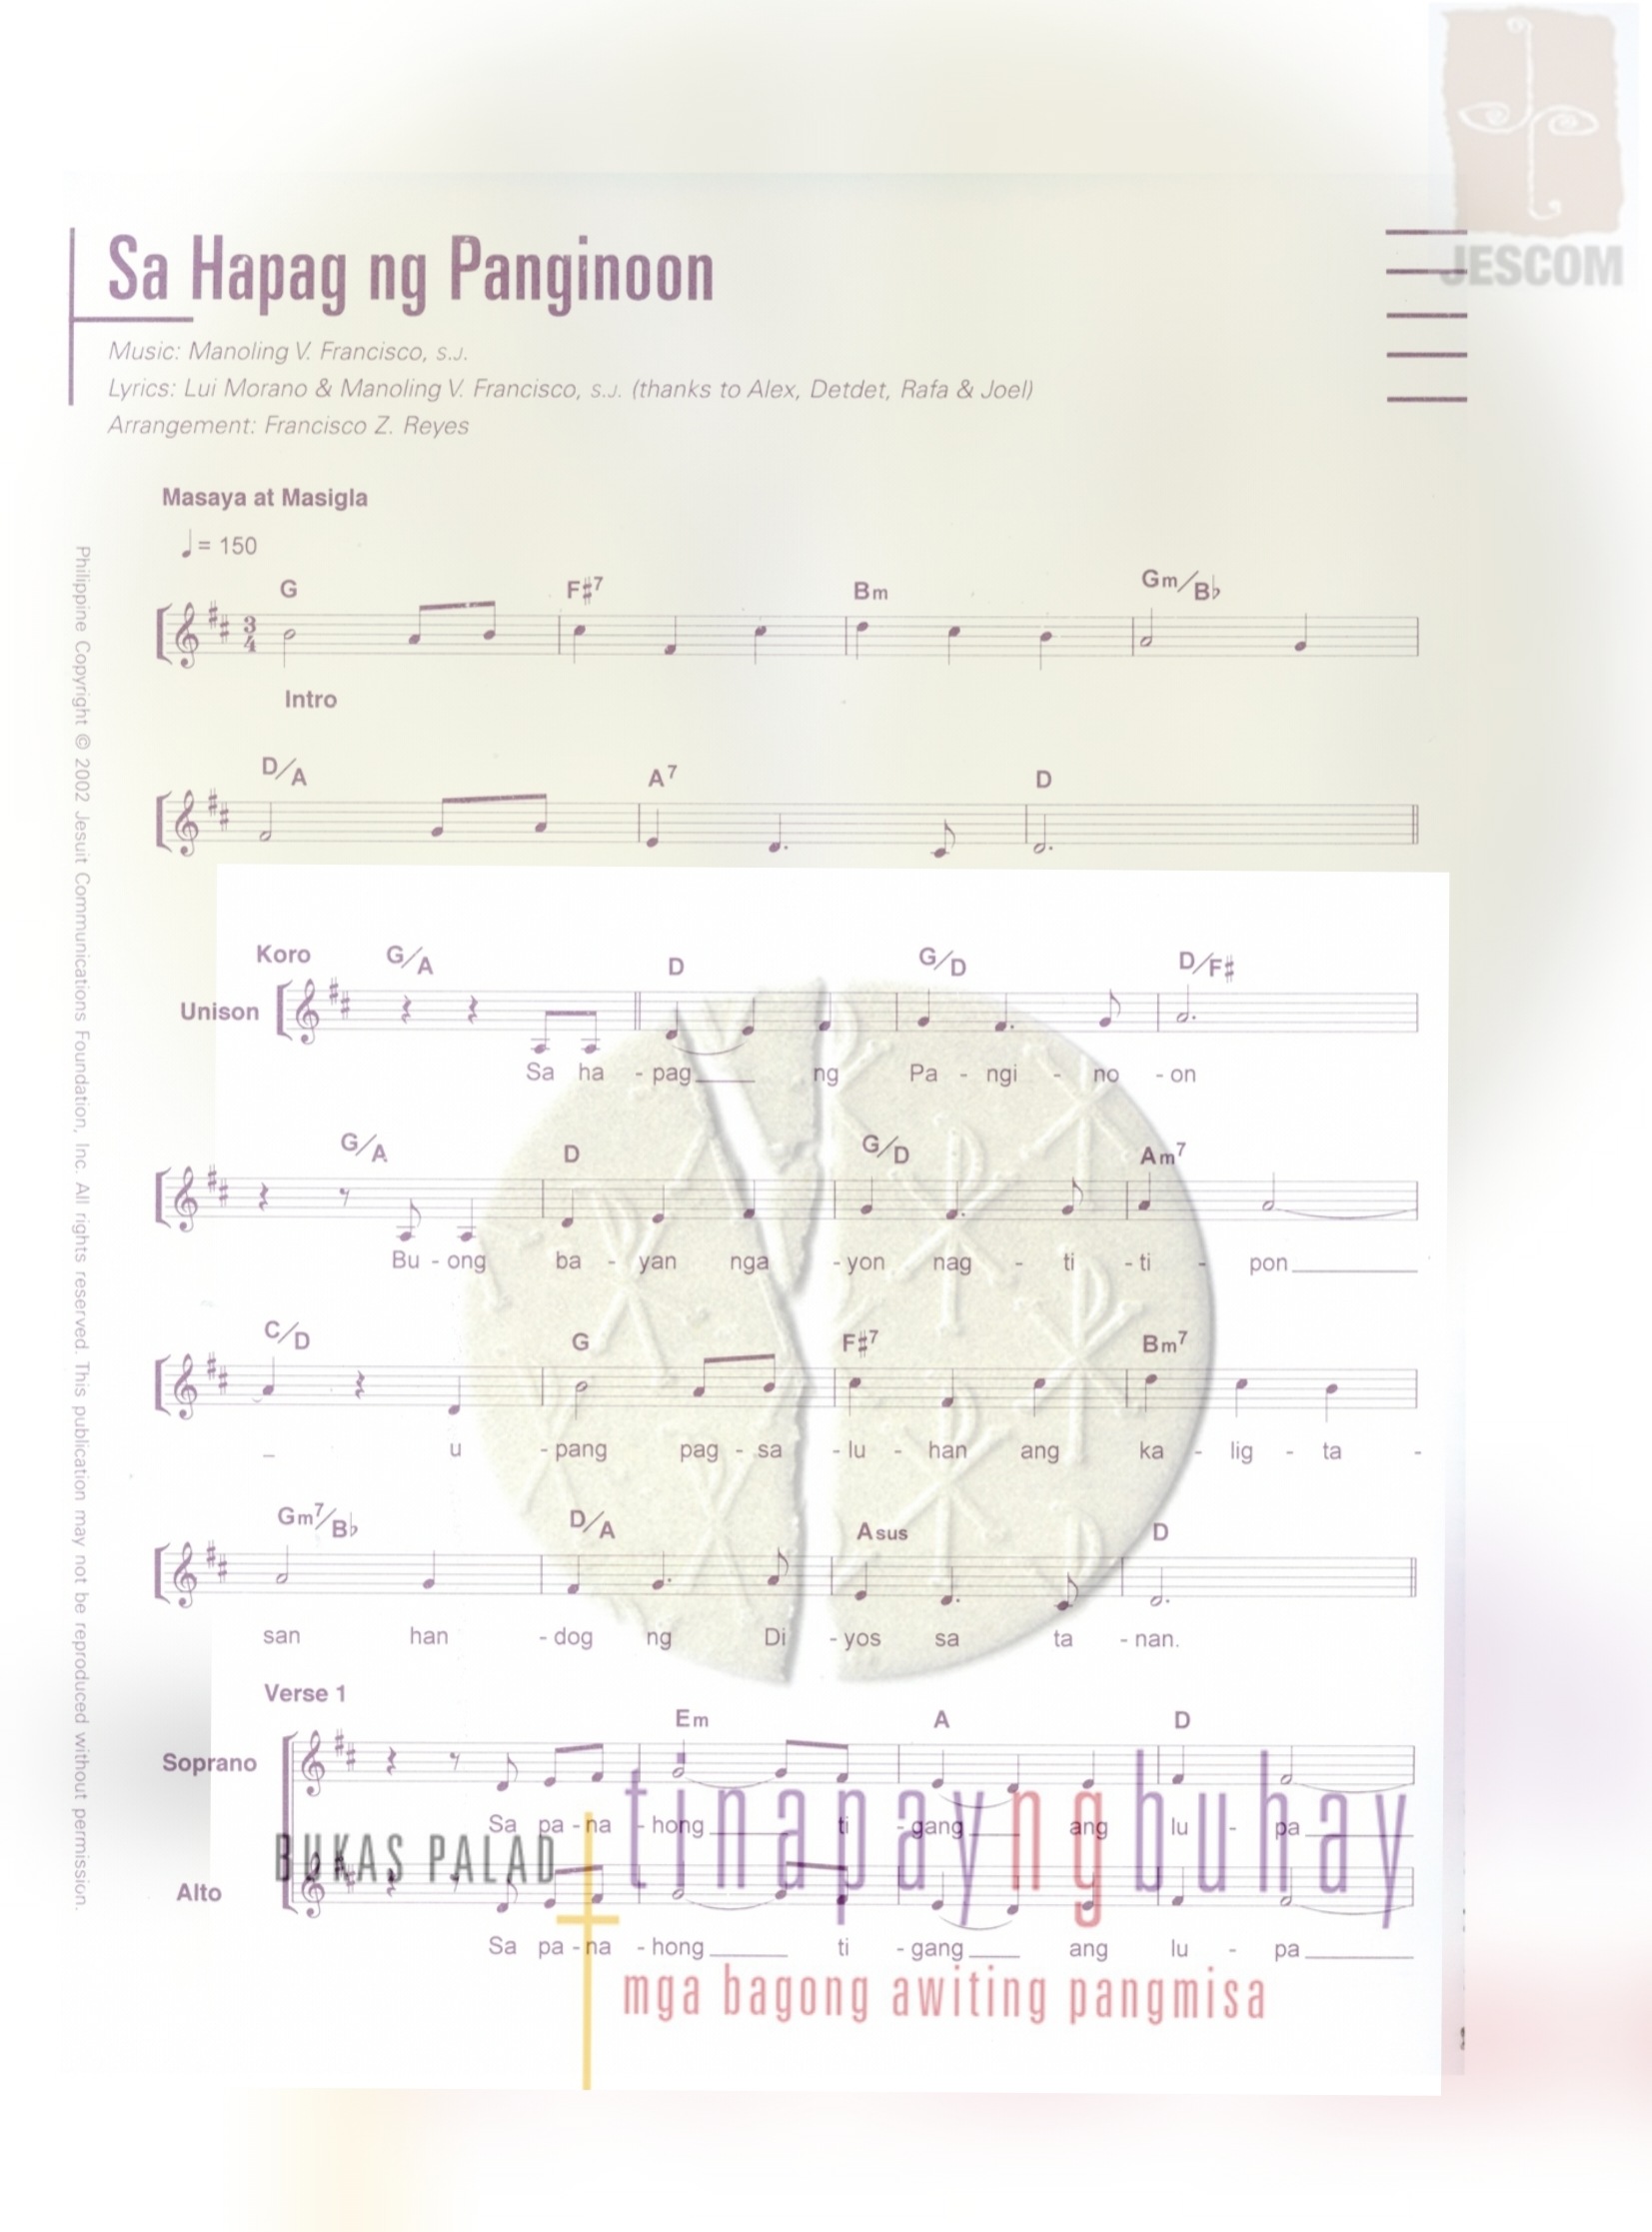 SA HAPAG NG PANGINOON – Music Sheet